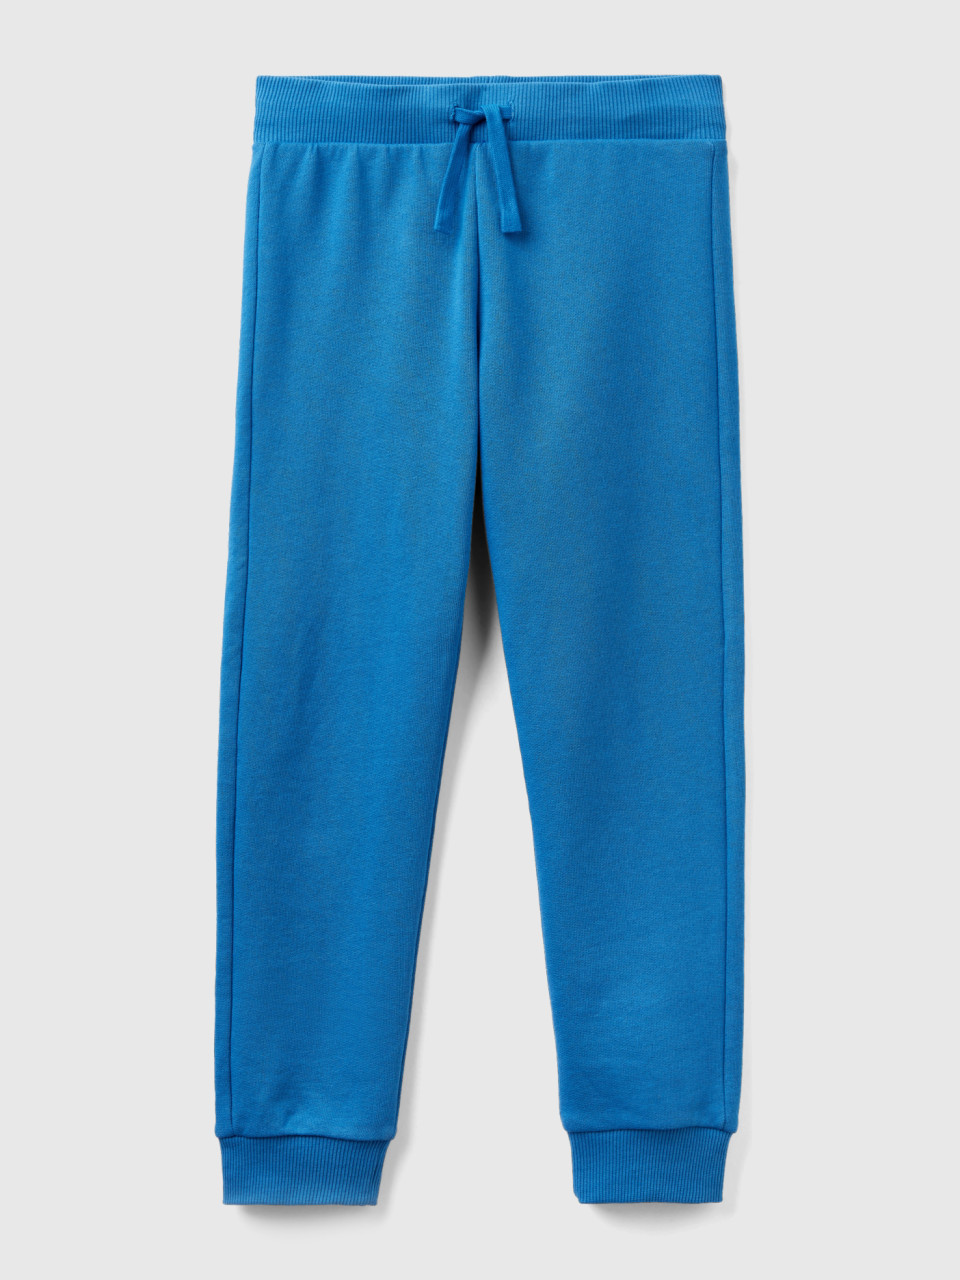 Benetton, Sportliche Hose Mit Tunnelzug, Blau, male